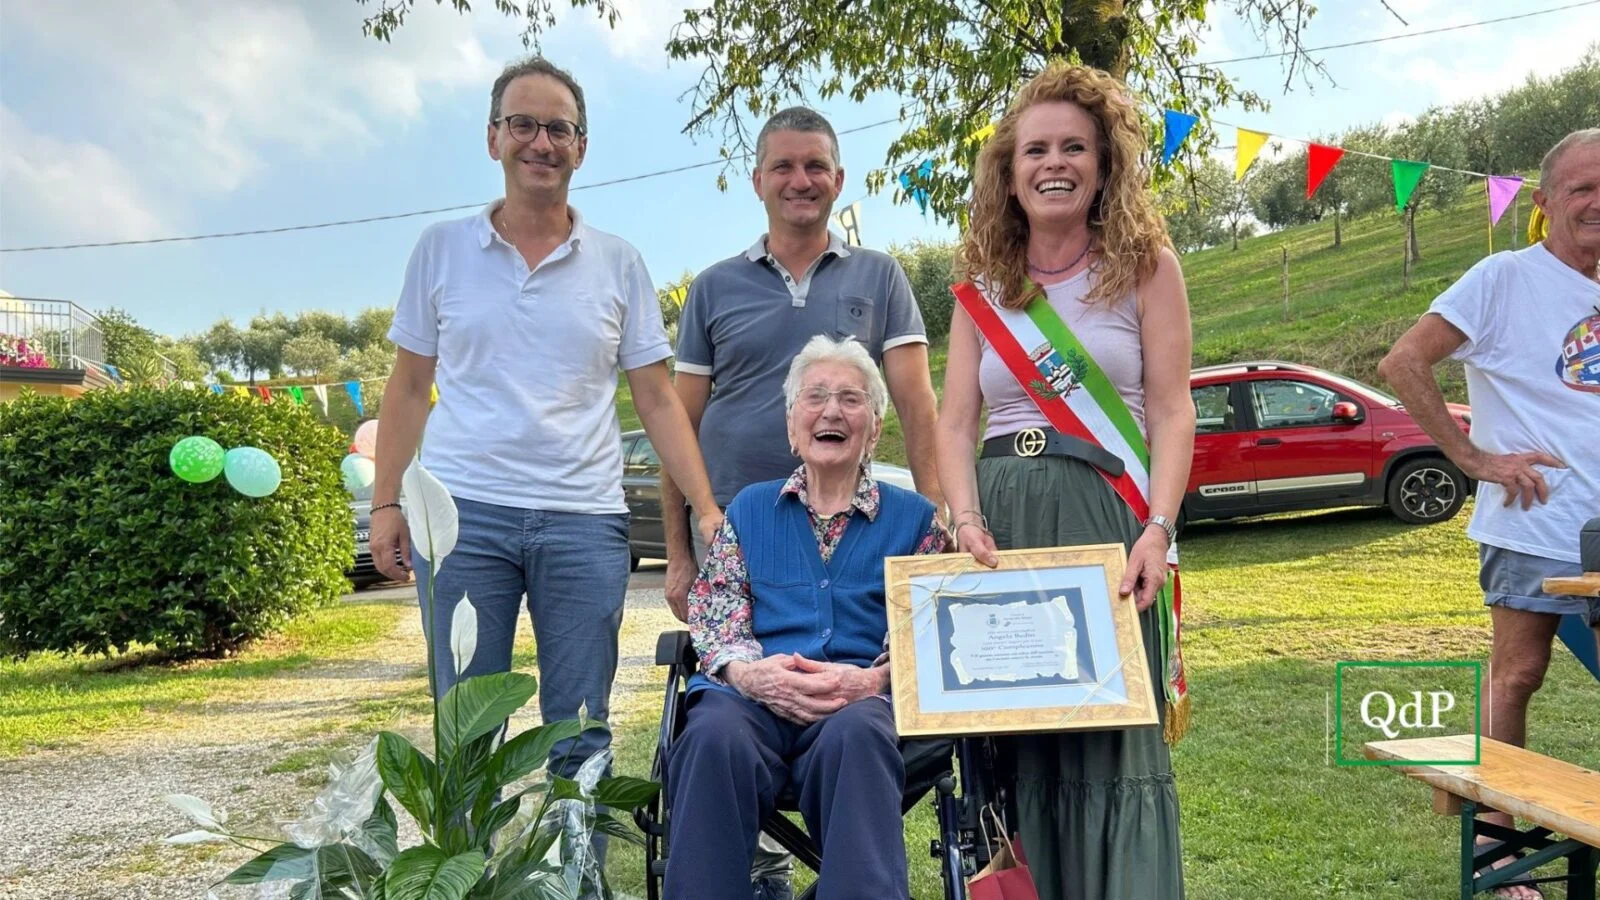 Angela Bedin festeggia 100 anni con la sua comunità